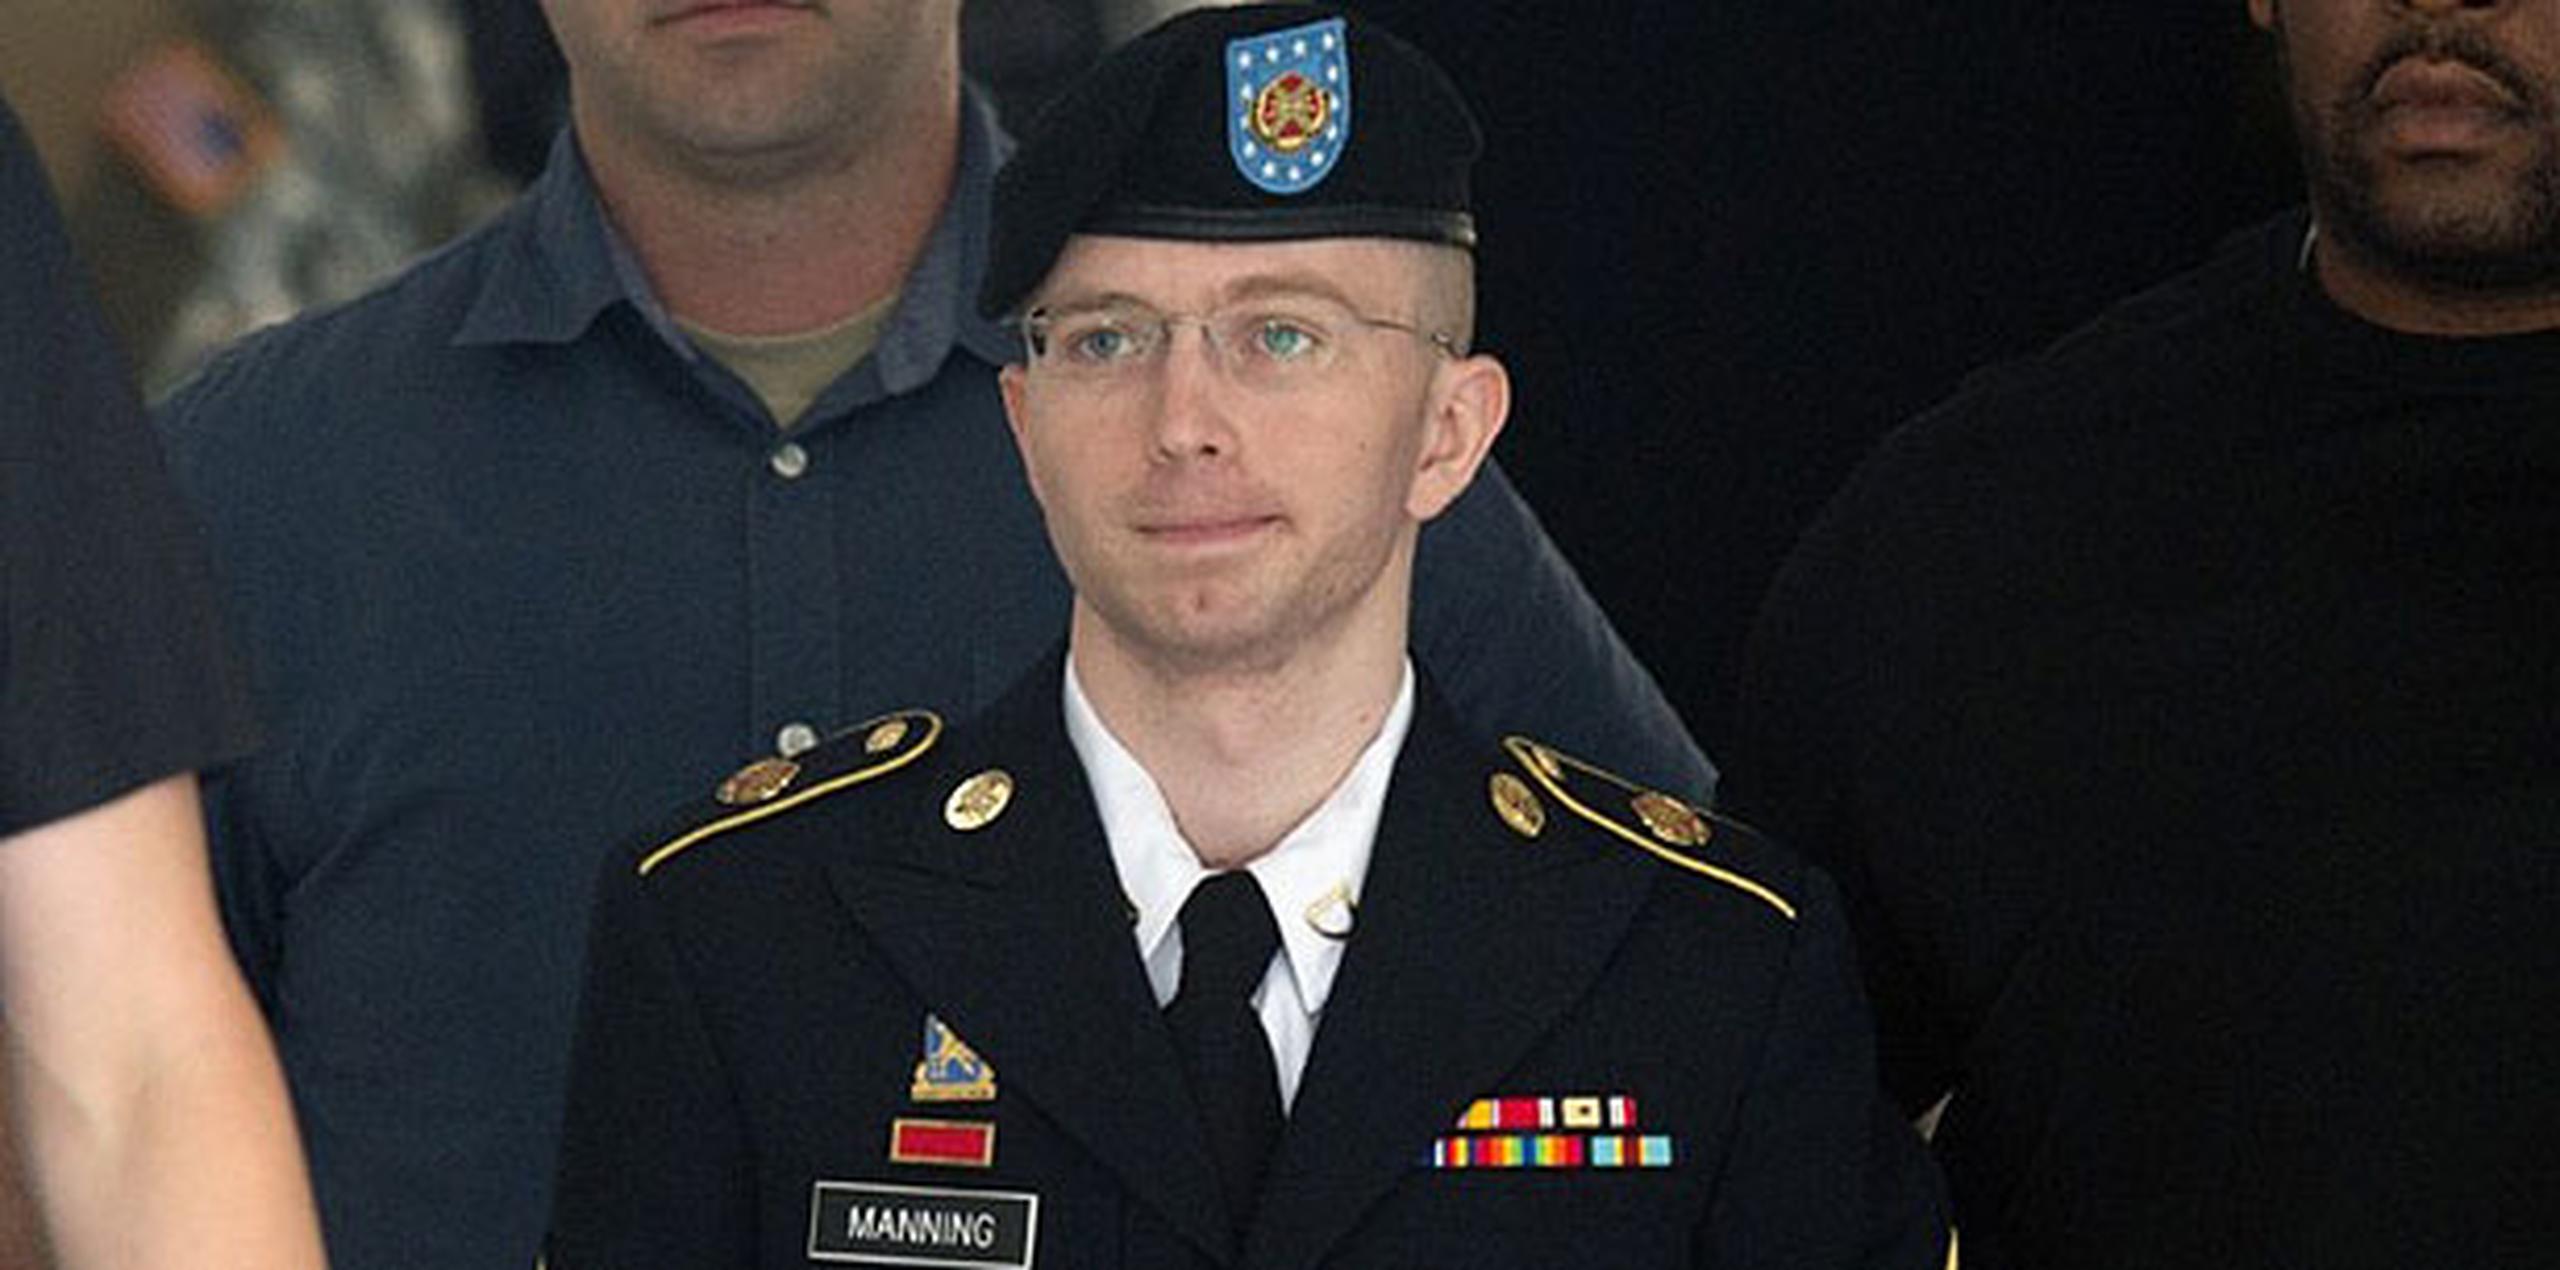 Manning admitió haber entregado a WikiLeaks más de 700,000 reportes de campo de batalla y cablegramas diplomáticos, así como un video del ataque de un helicóptero de Estados Unidos en 2007 que mató civiles en Irak, incluido un fotógrafo de la agencia de noticias Reuters y su chofer.